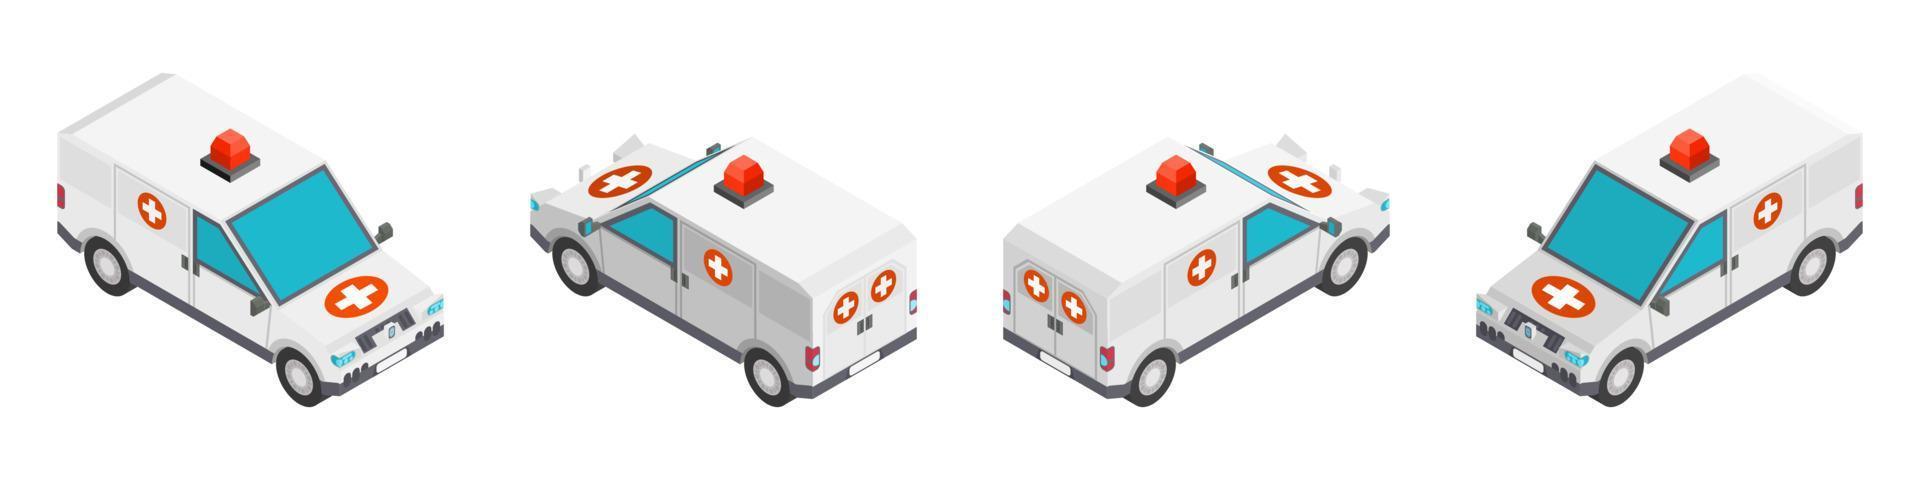 voiture d'ambulance dans un style isométrique. nouveau dessin vecteur